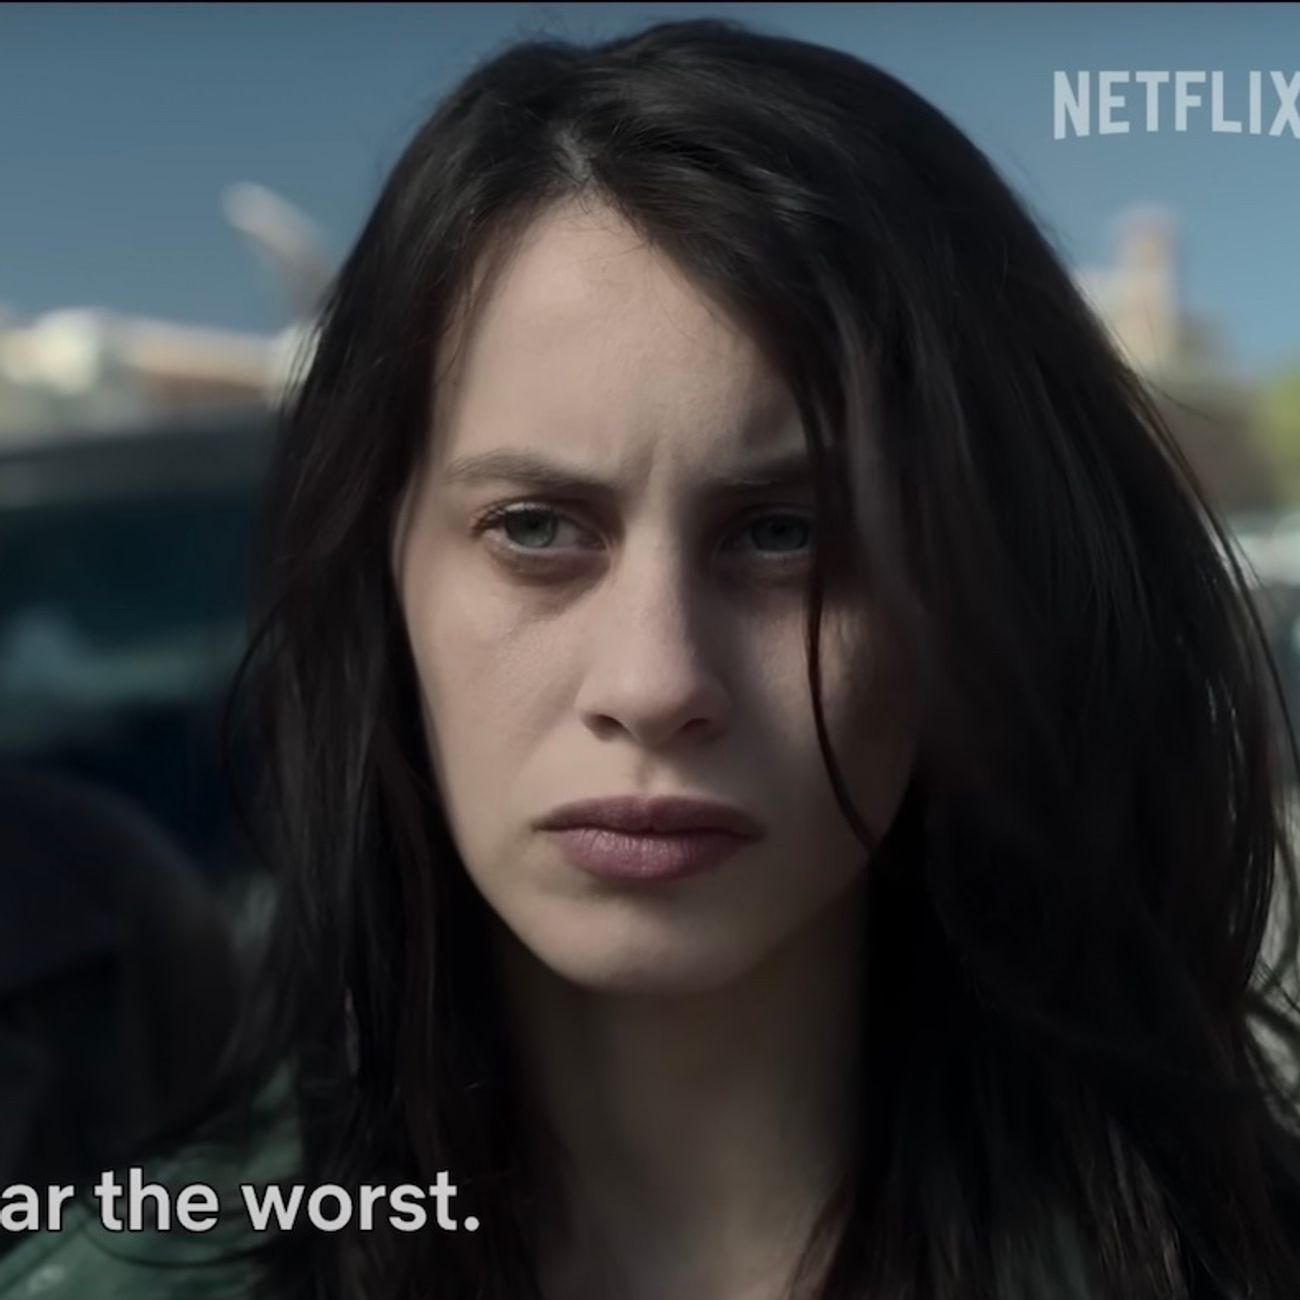 La Petite Fille sous la neige » sur Netflix : une série policière